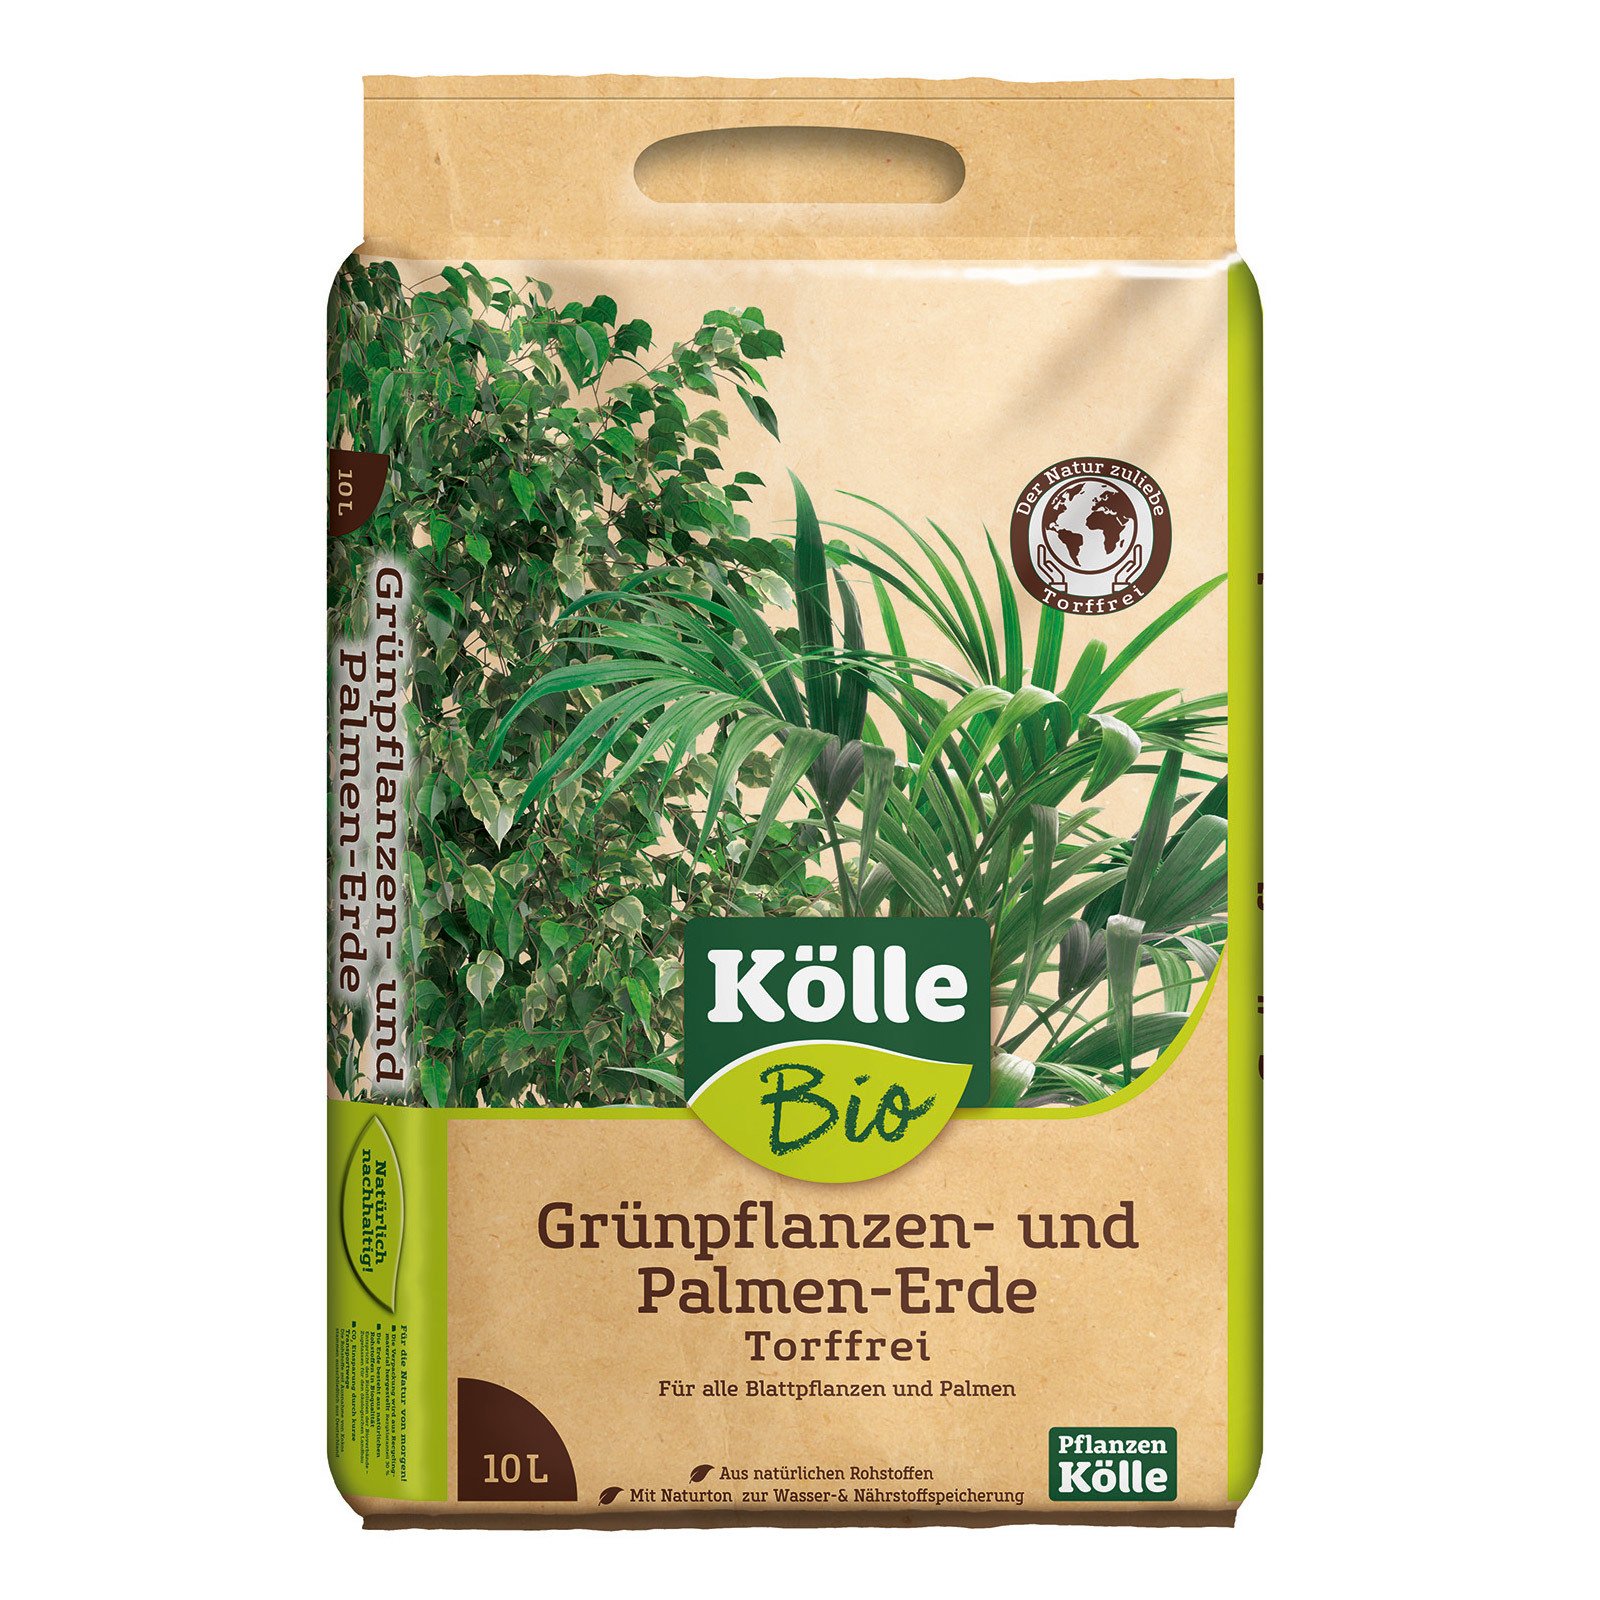 Kölle Bio Grünpflanzen- und Palmenerde torffrei, 10l